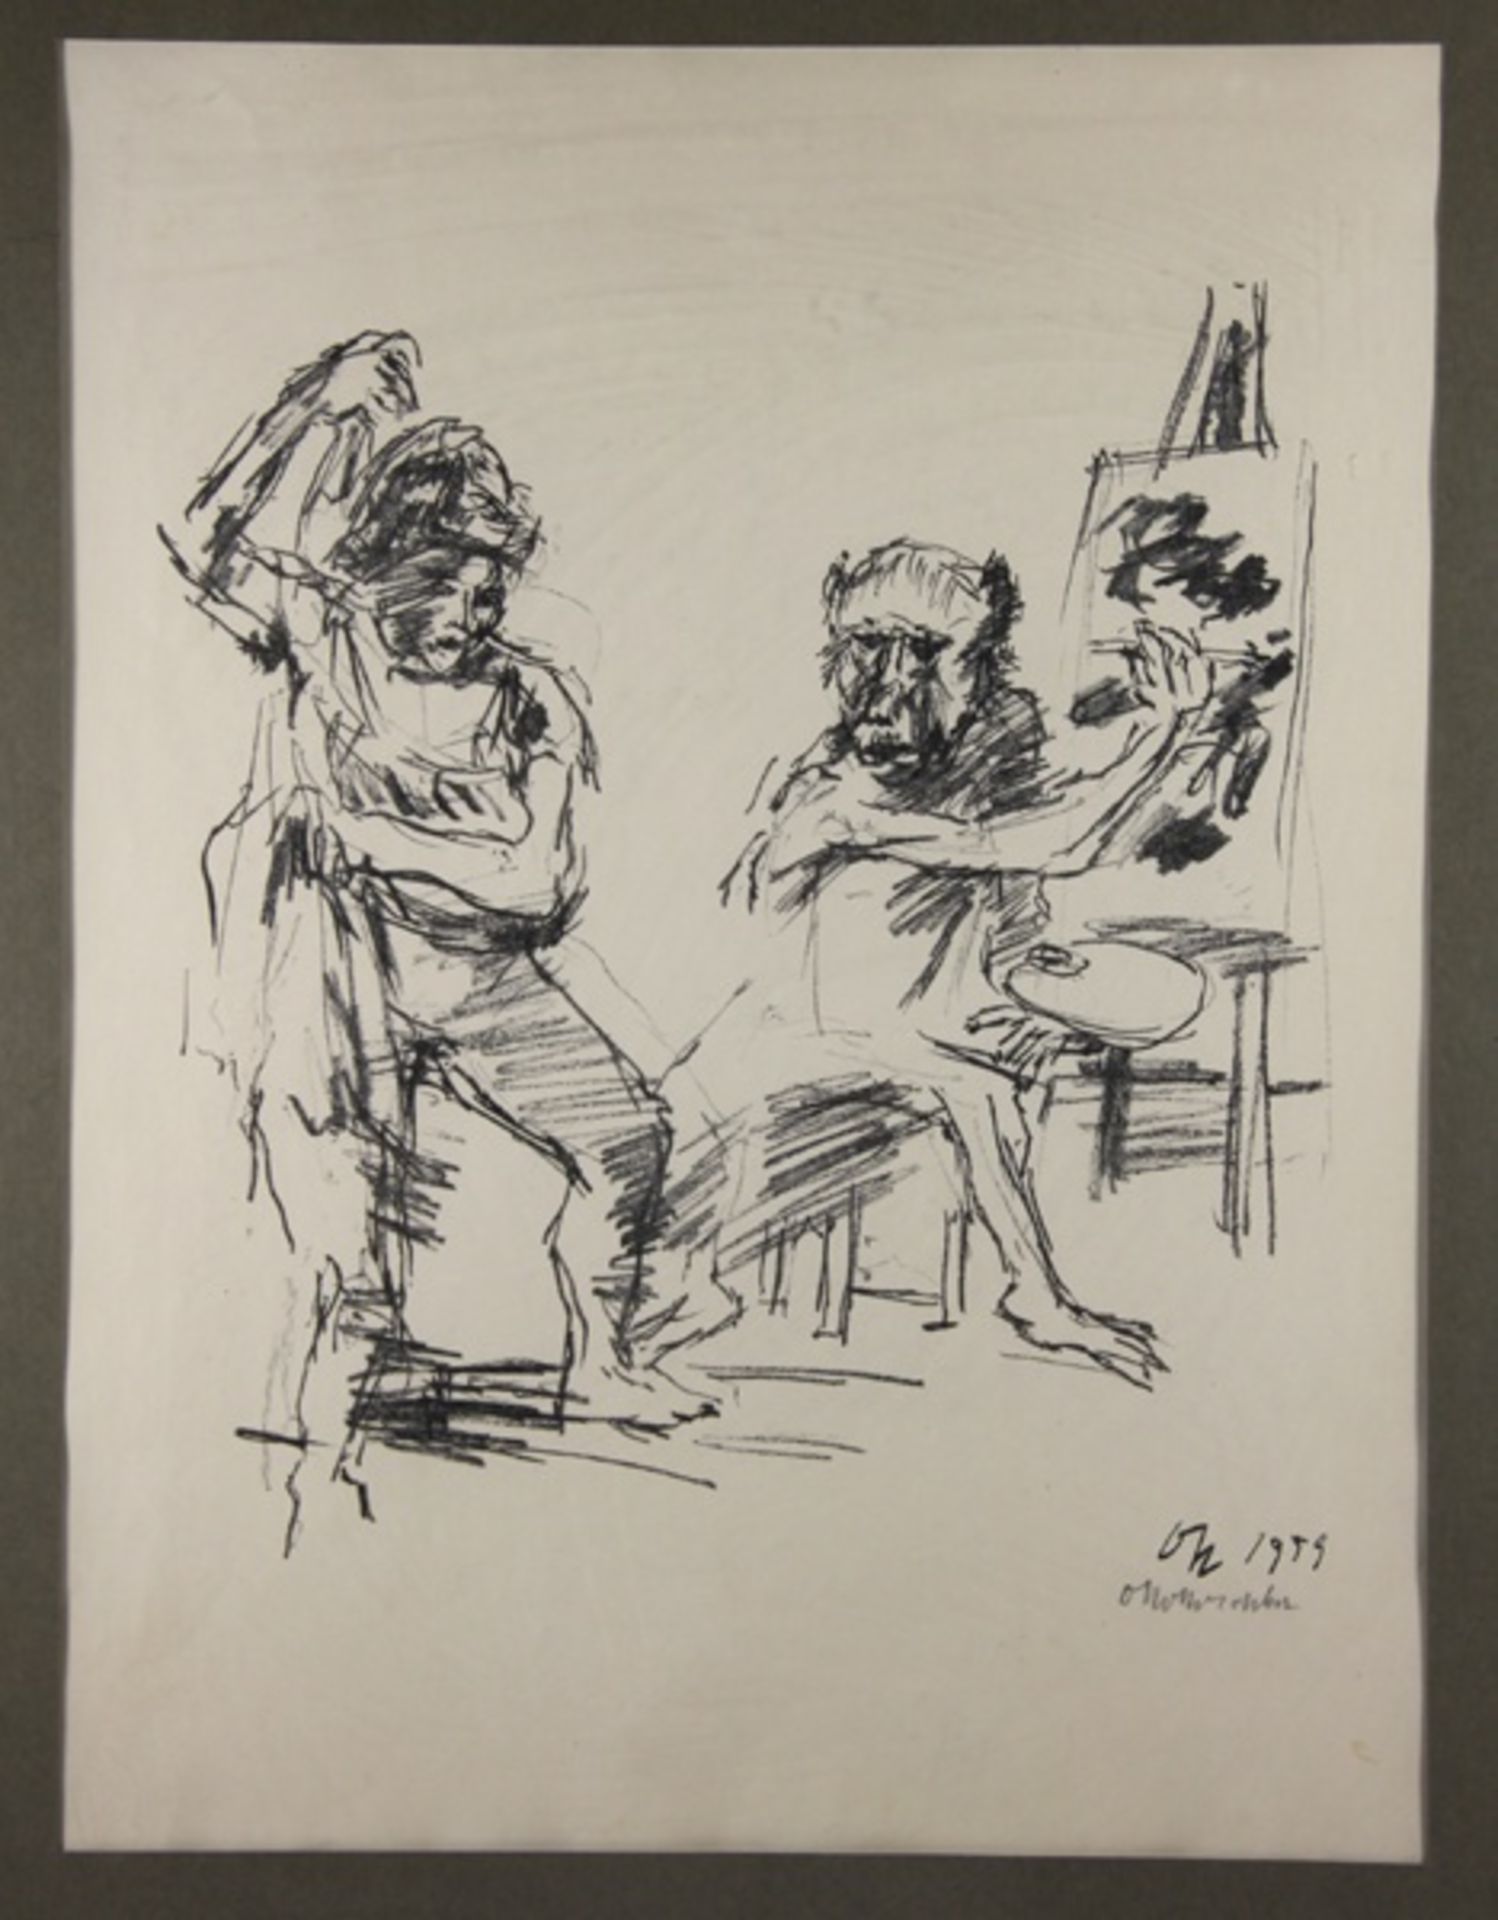 Kokoschka, Oskar1886-1980, Lithographie, Action Painter, weibliches Modell vor einem Maler an seiner